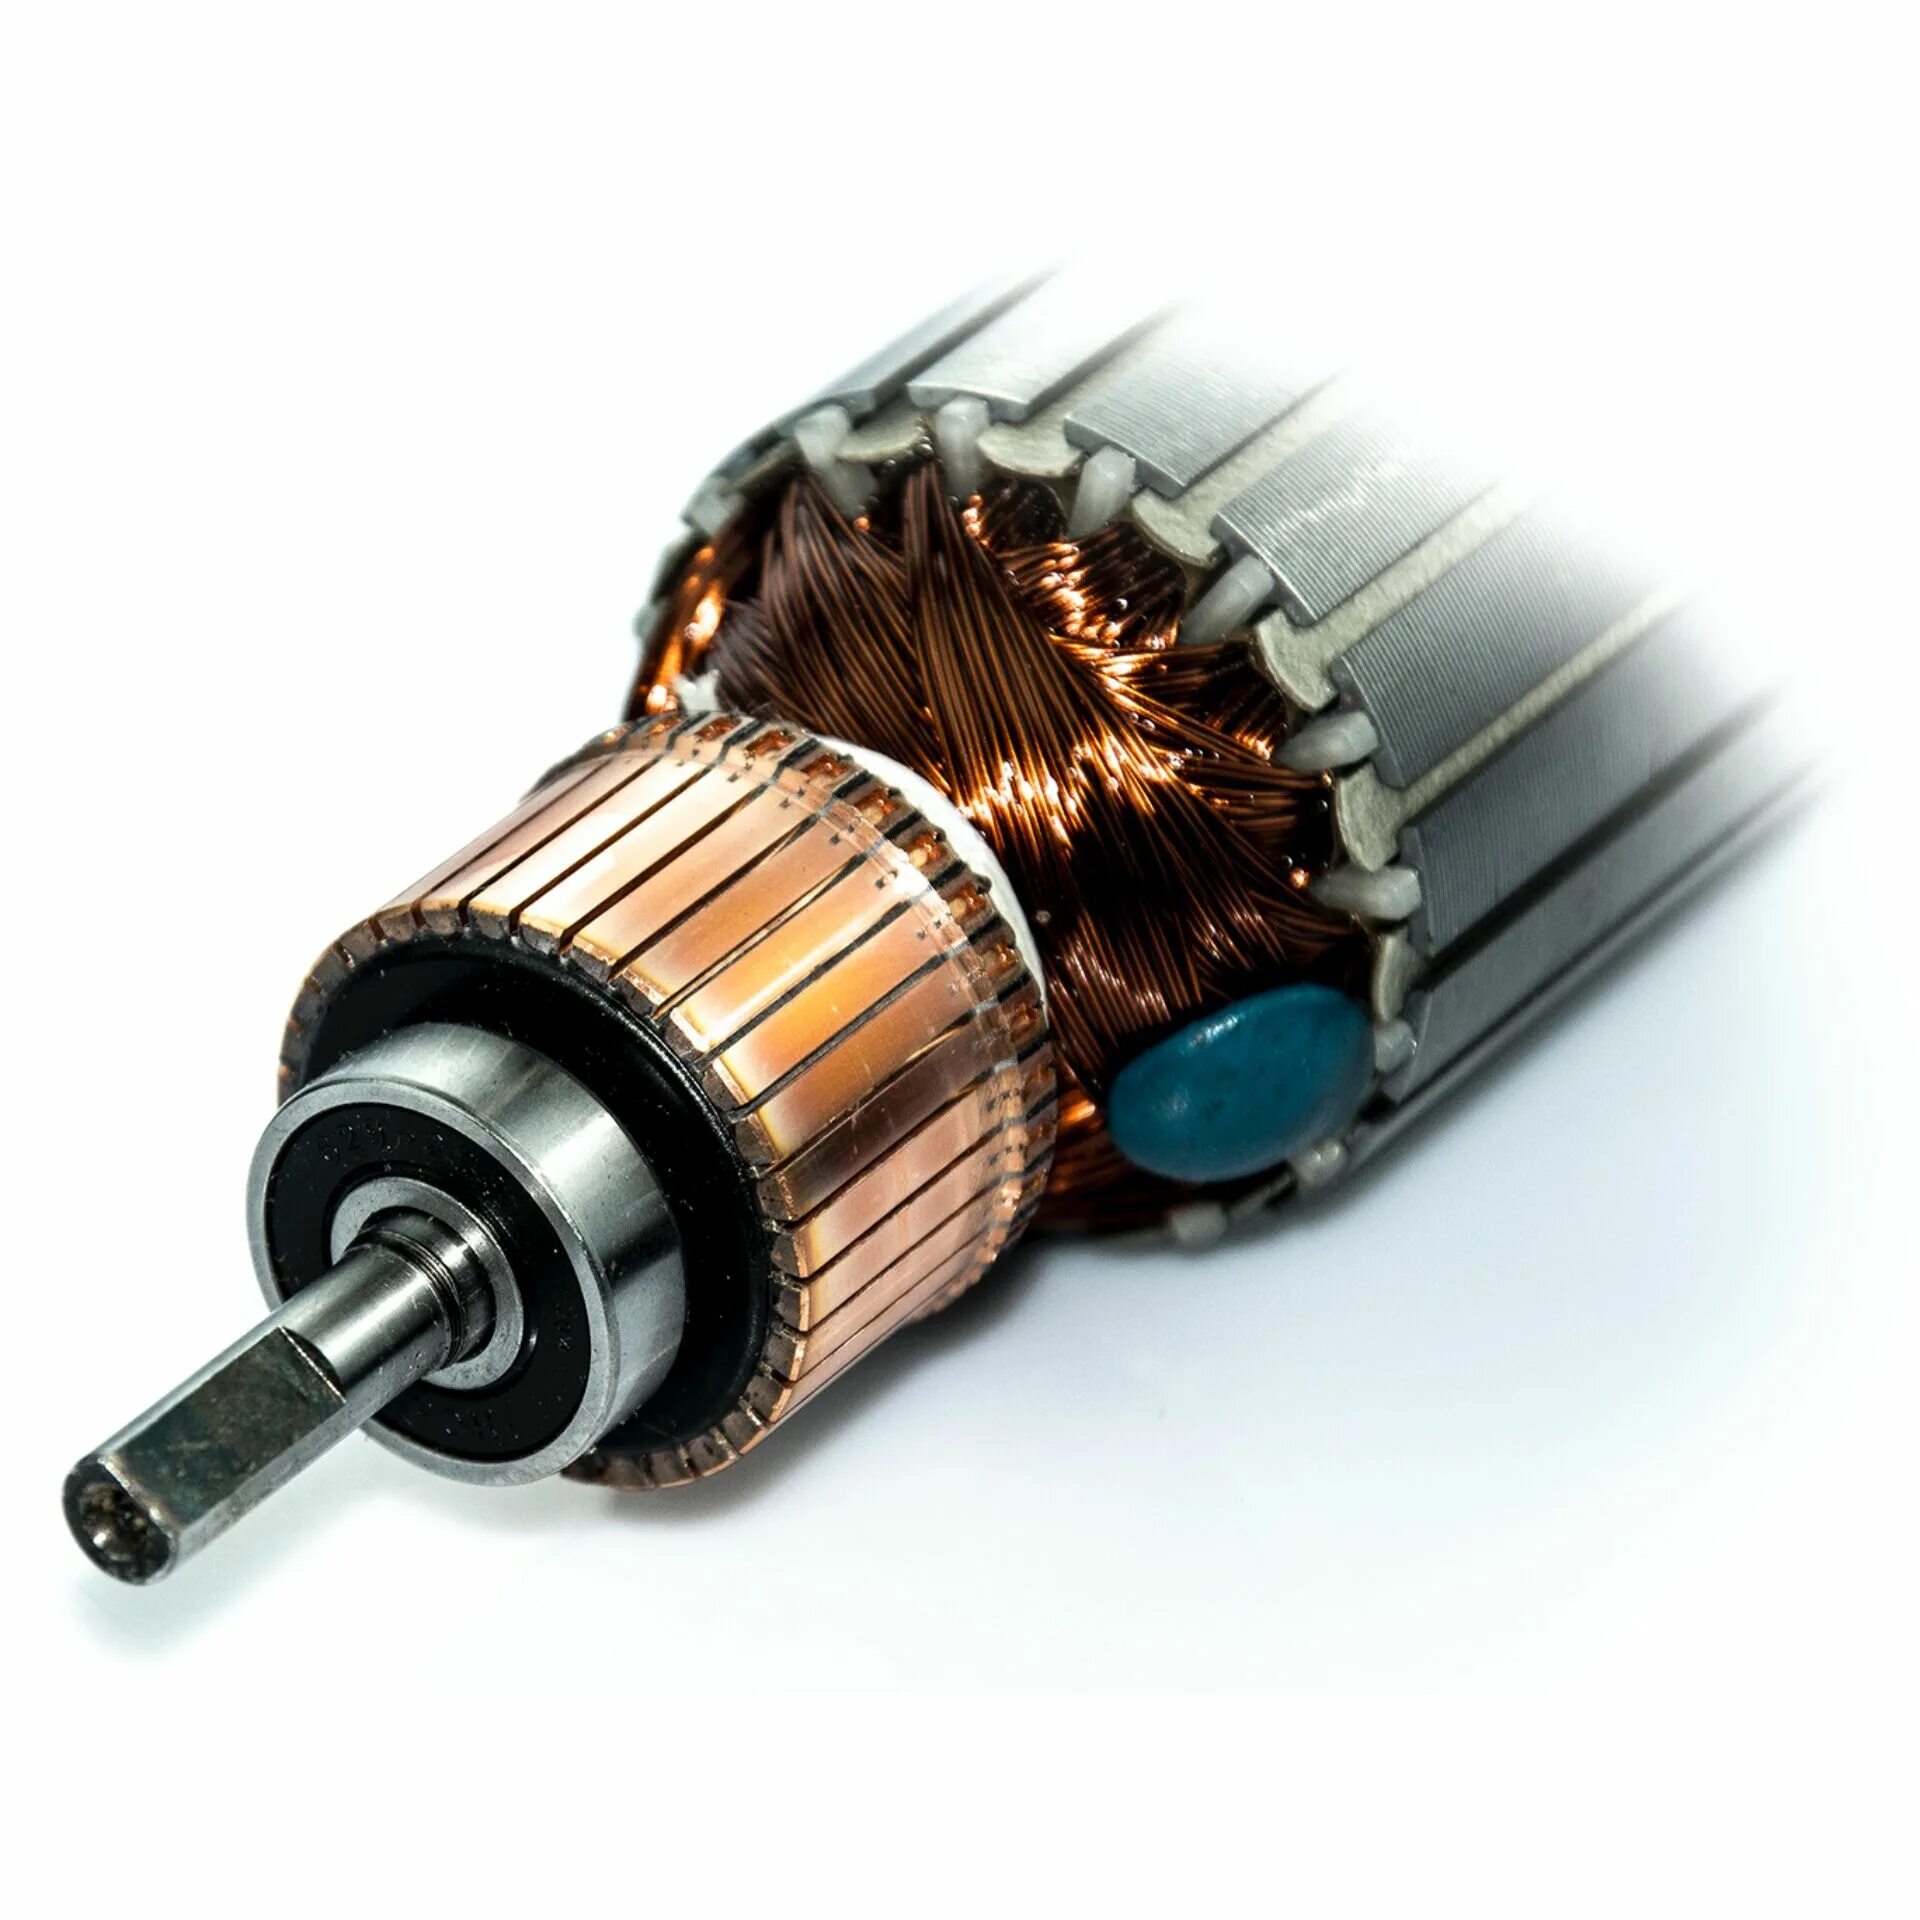 Ротор коллекторного электродвигателя. Ротор Hitachi 360520e якорь электродвигателя. Ротор щеточного электродвигателя 24v3kw. Обмотка ротора электродвигателя. Коллектор мотора купить